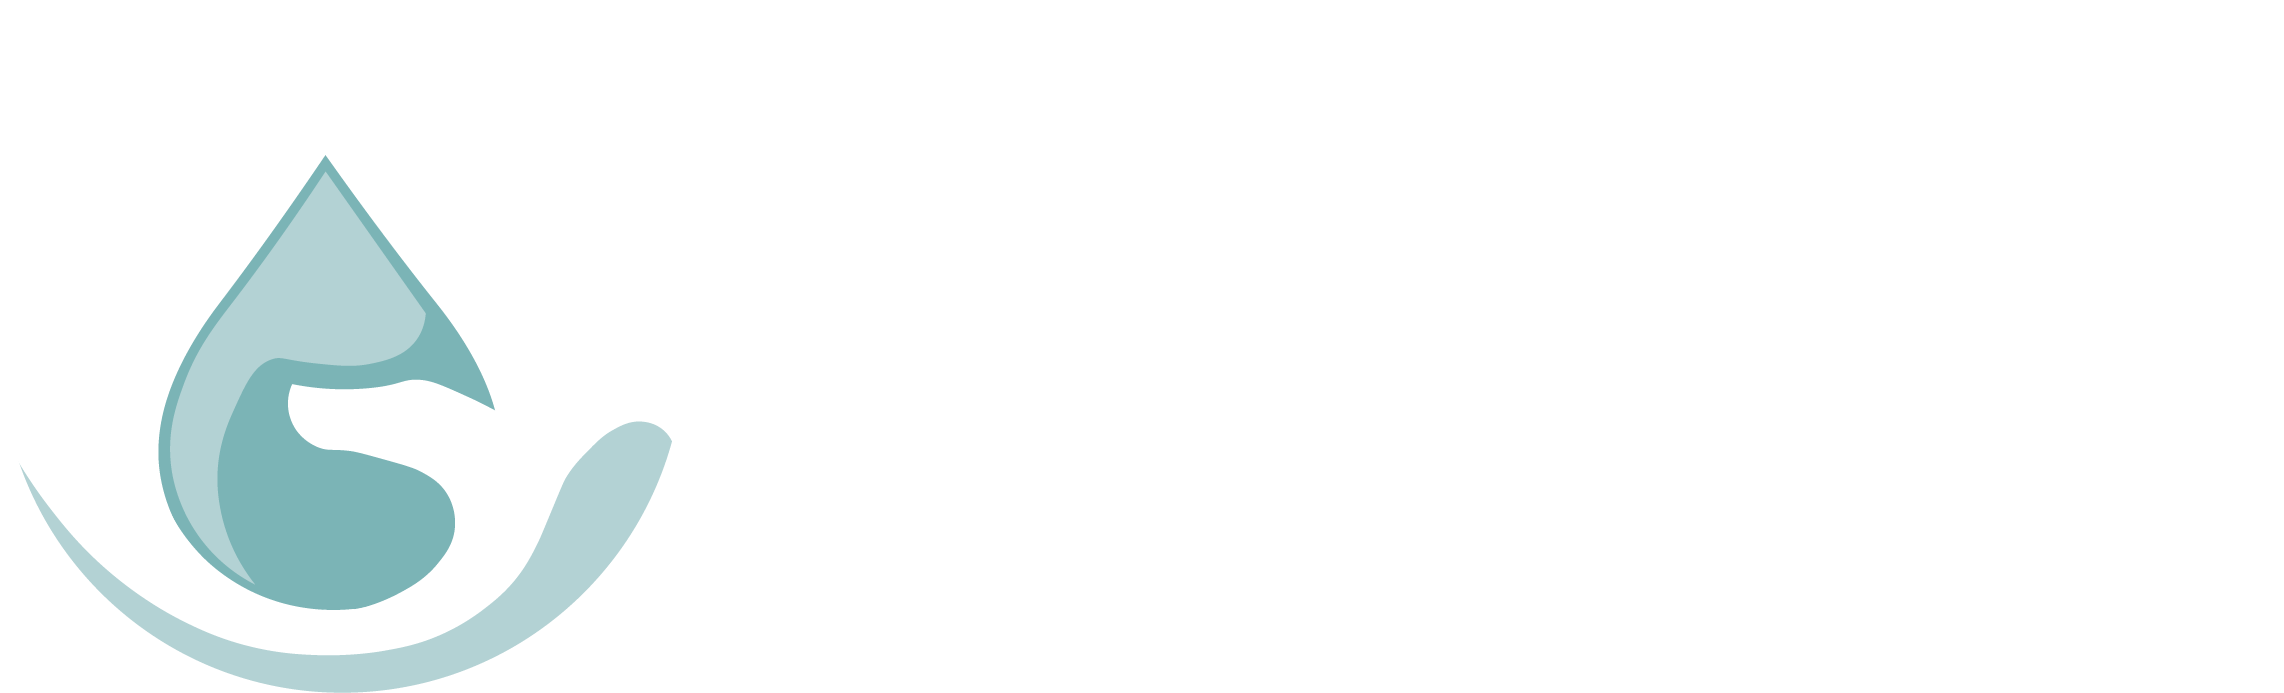 The Flood Expo